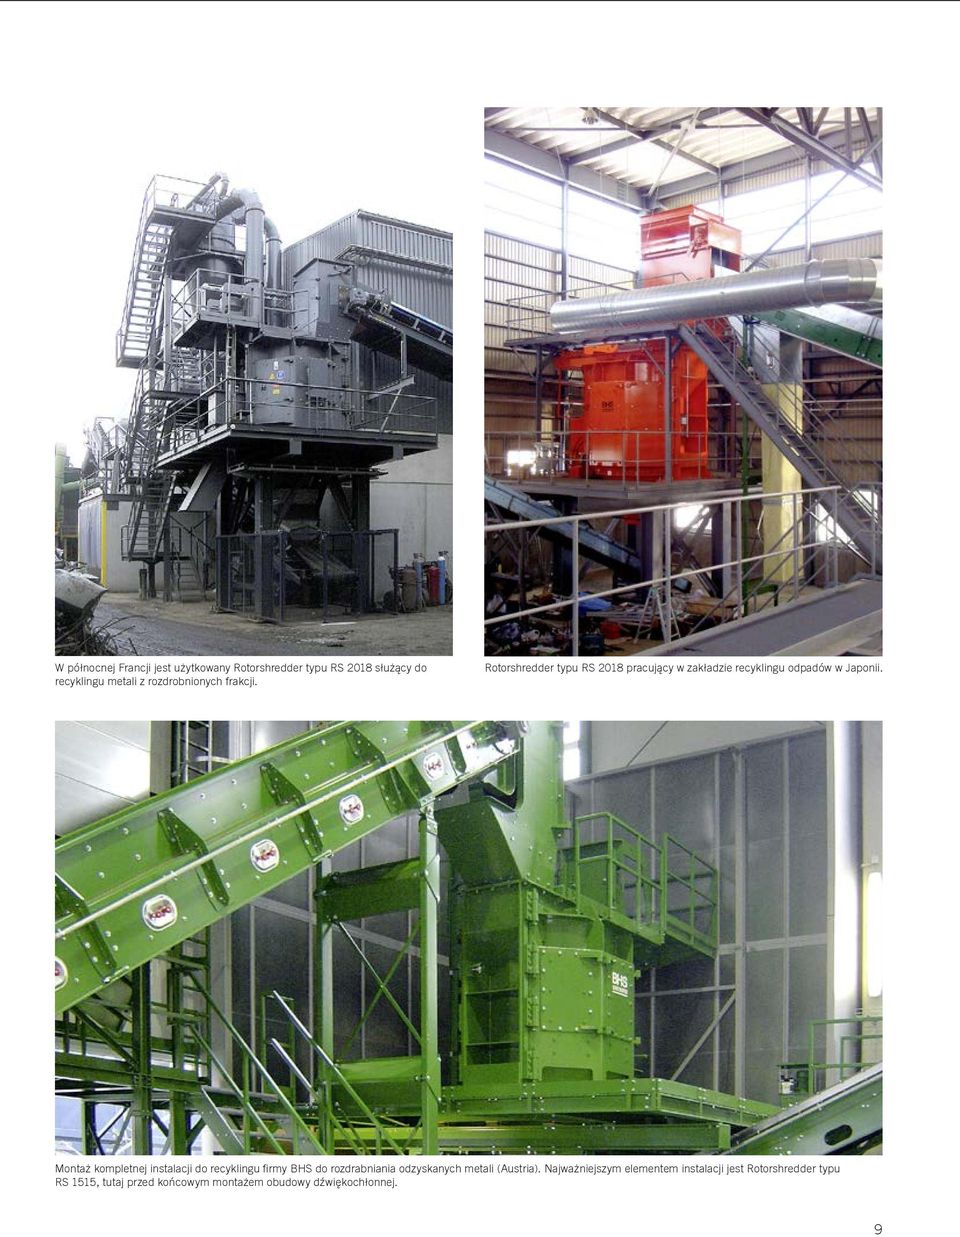 Montaż kompletnej instalacji do recyklingu firmy BHS do rozdrabniania odzyskanych metali (Austria).